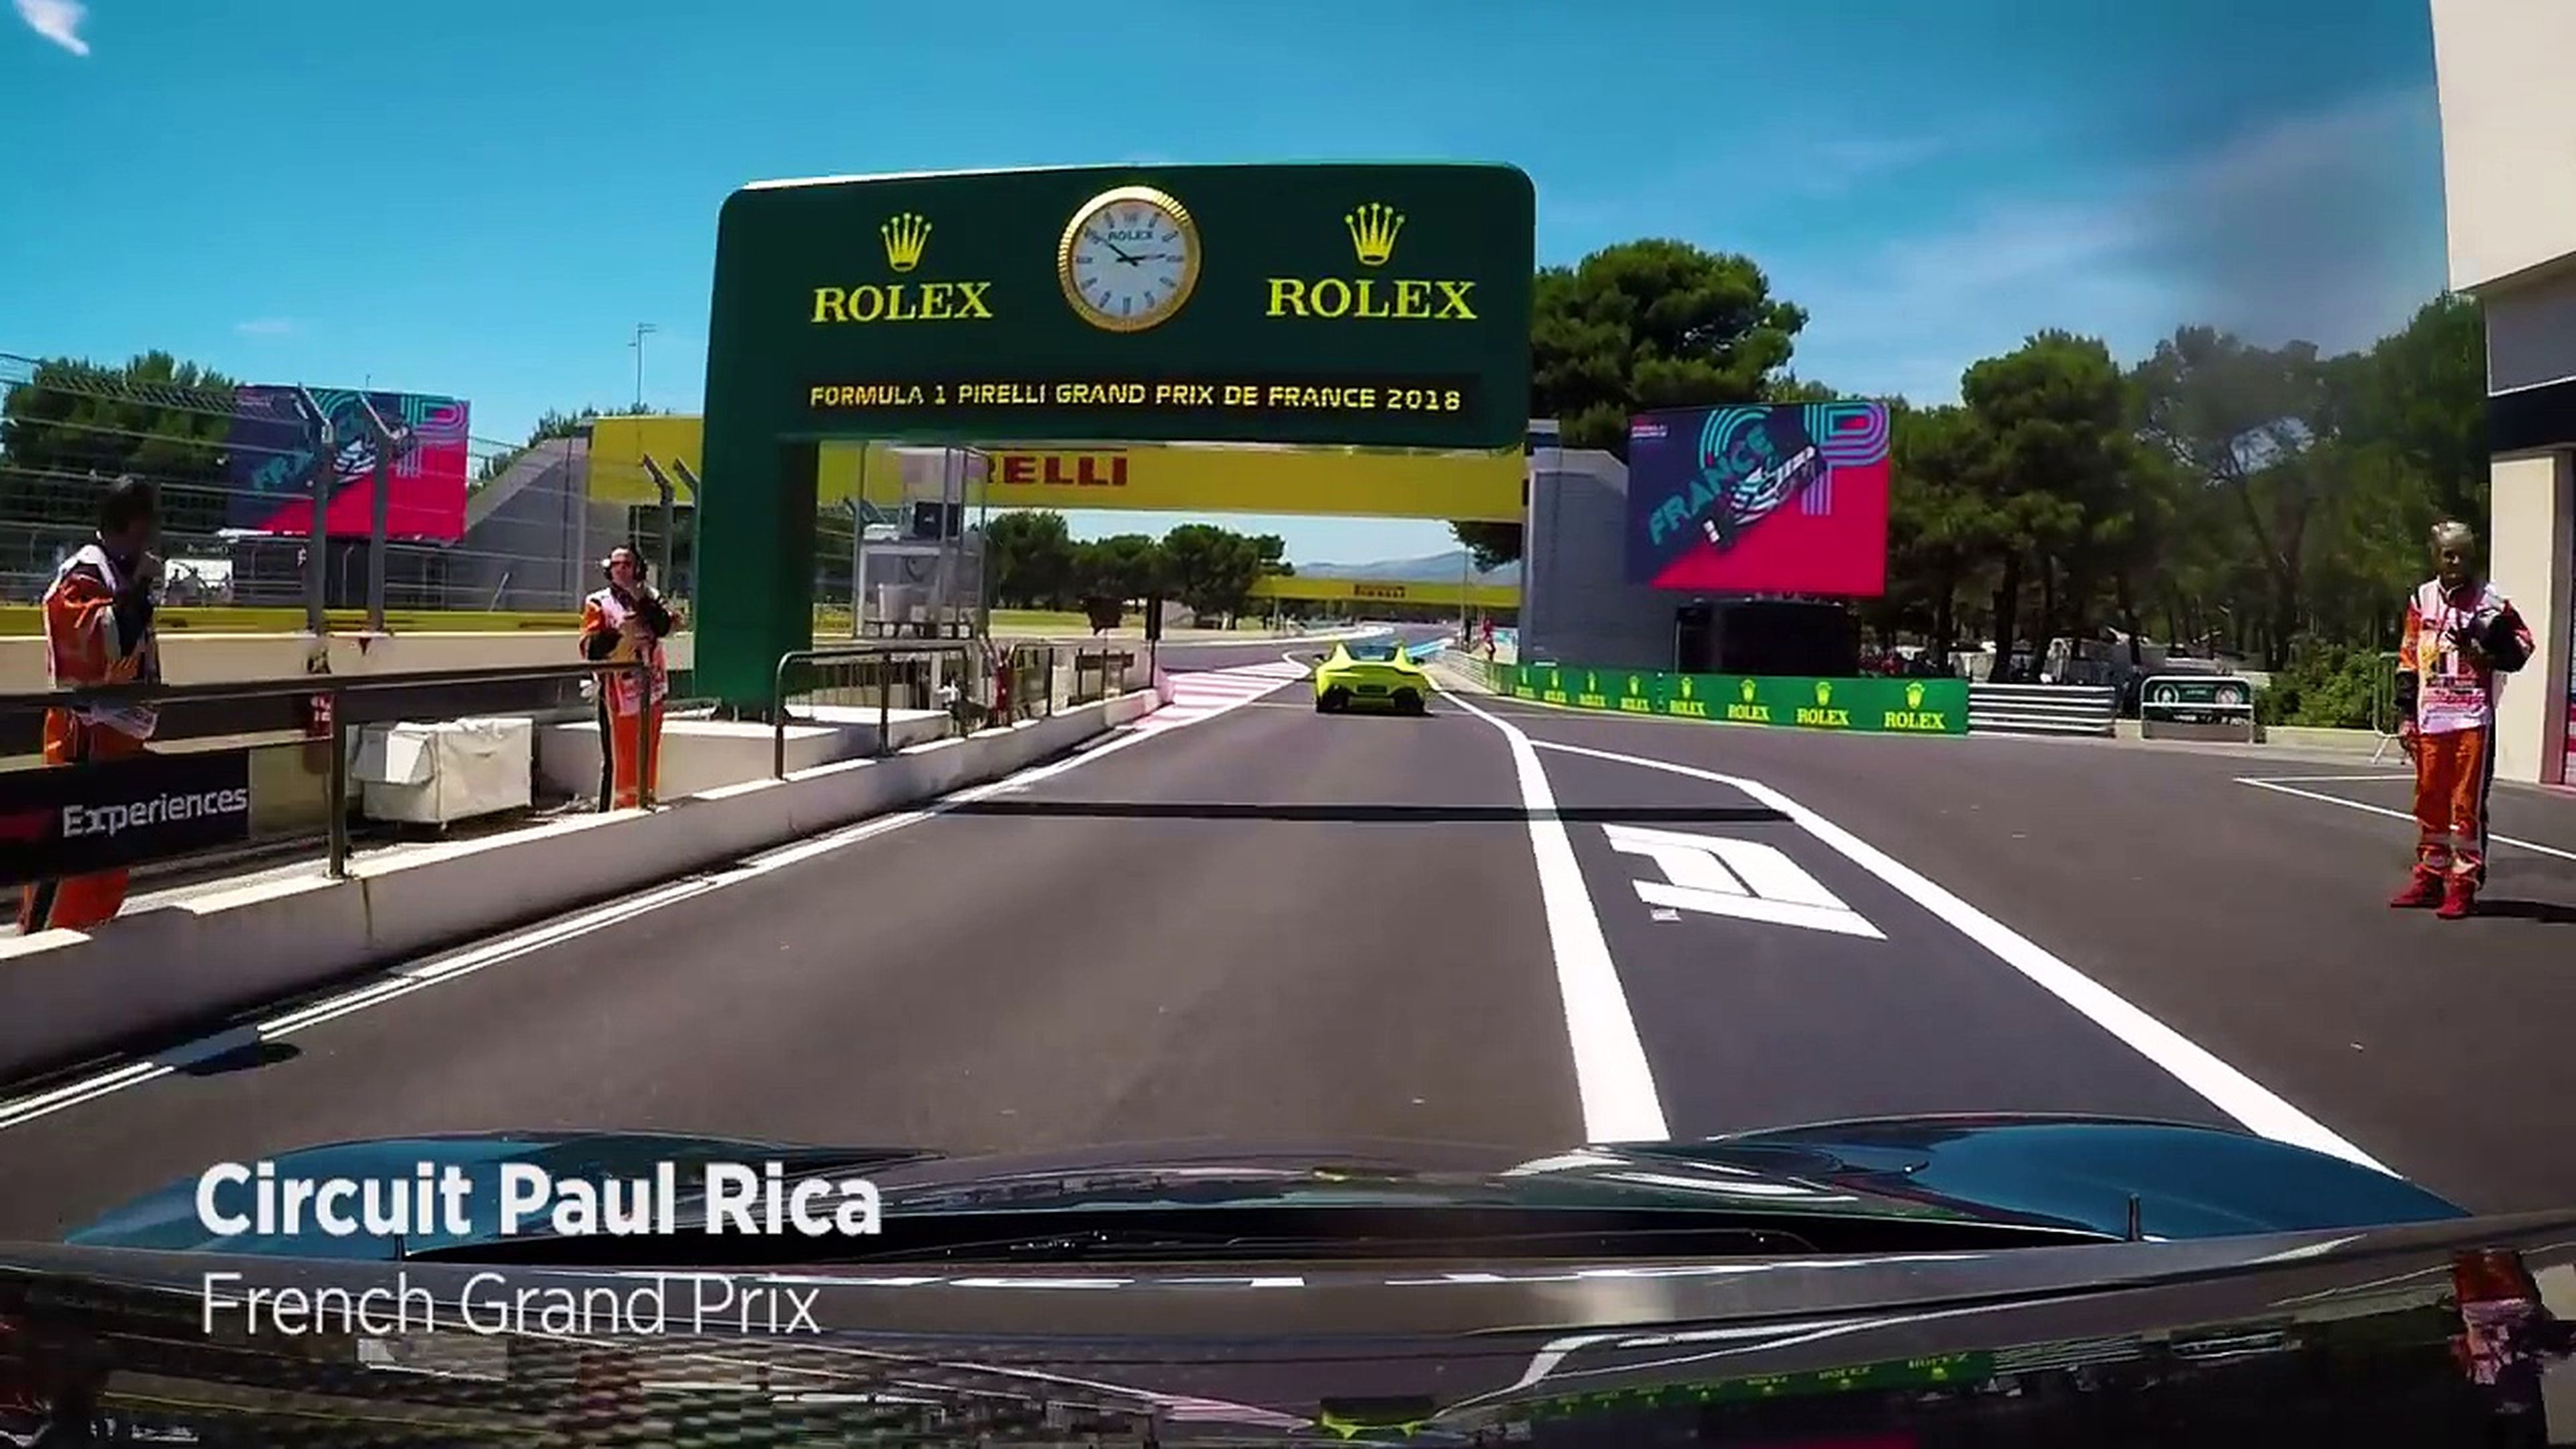 VÍDEO: vuelta onboard a Paul Ricard en un McLaren 720S [TG]